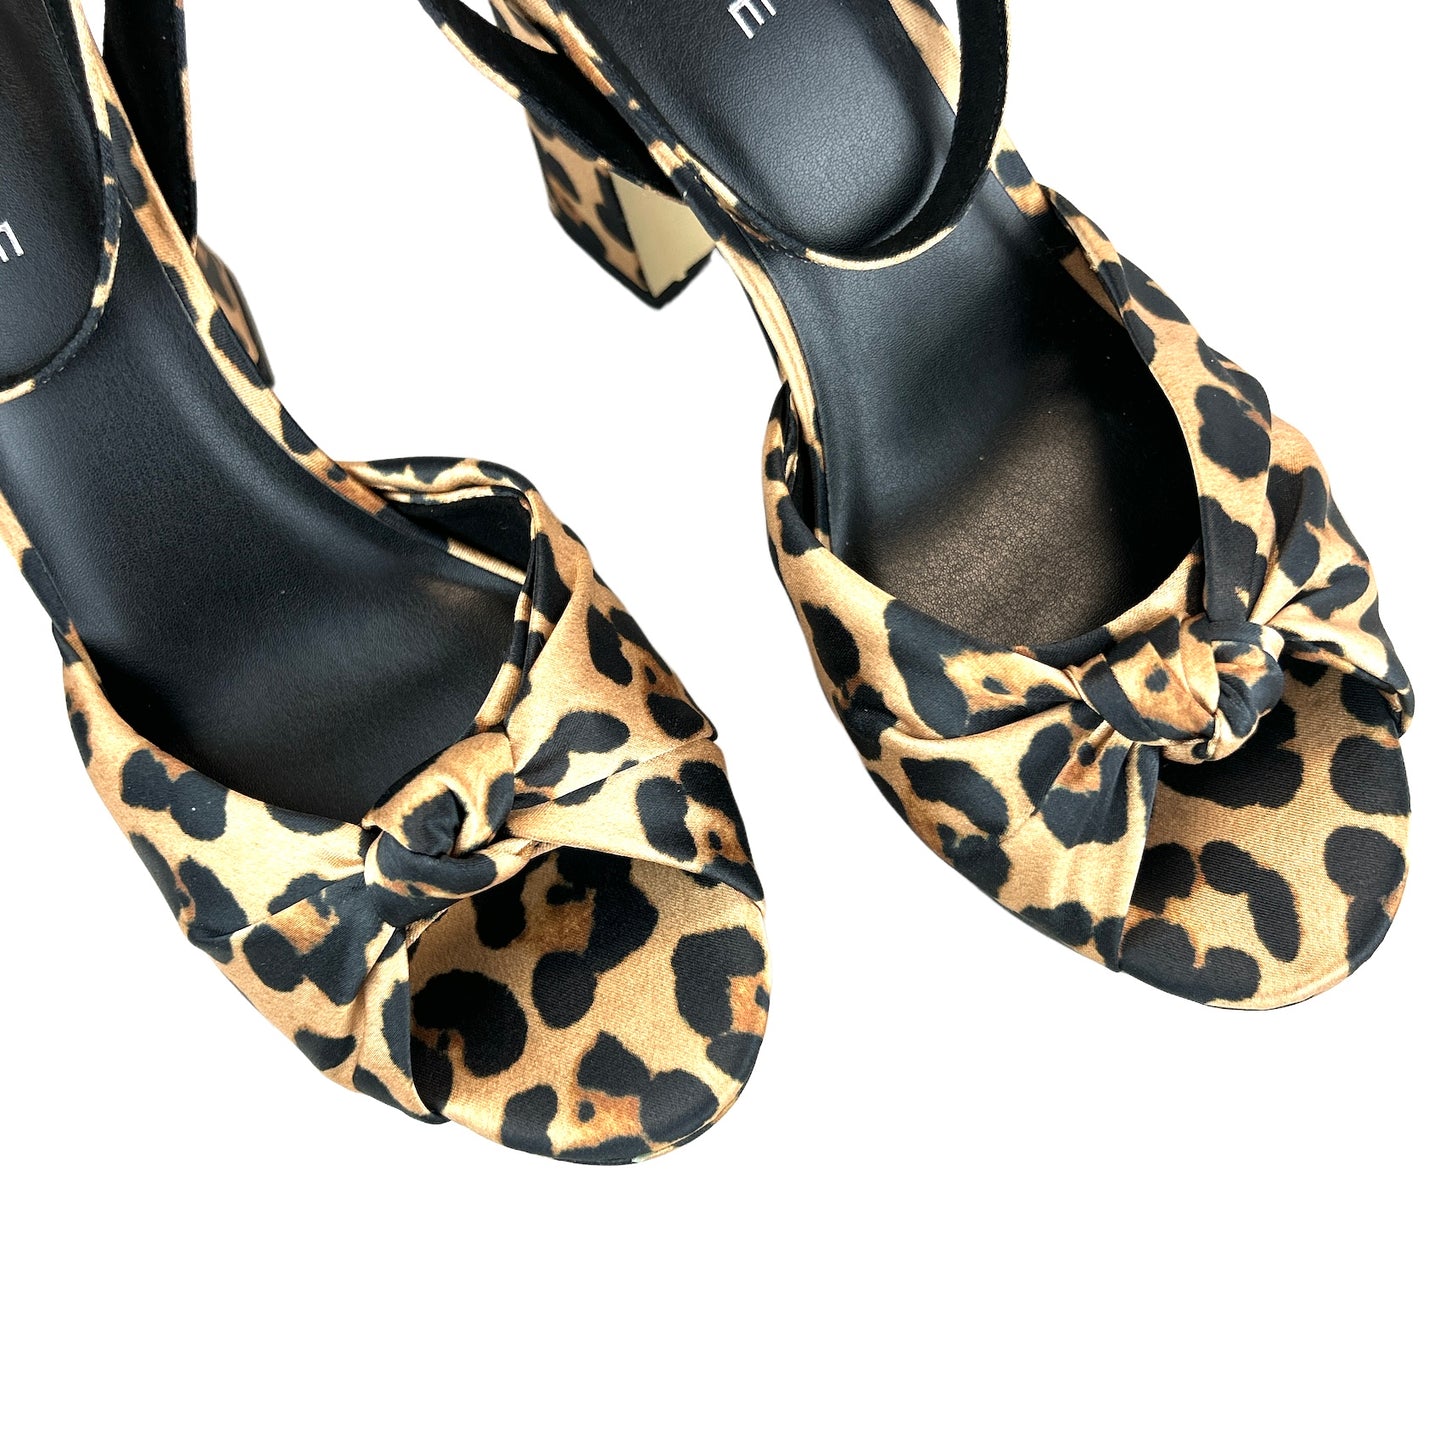 DAYNA Platform High Heel Sandals Women's Shoes